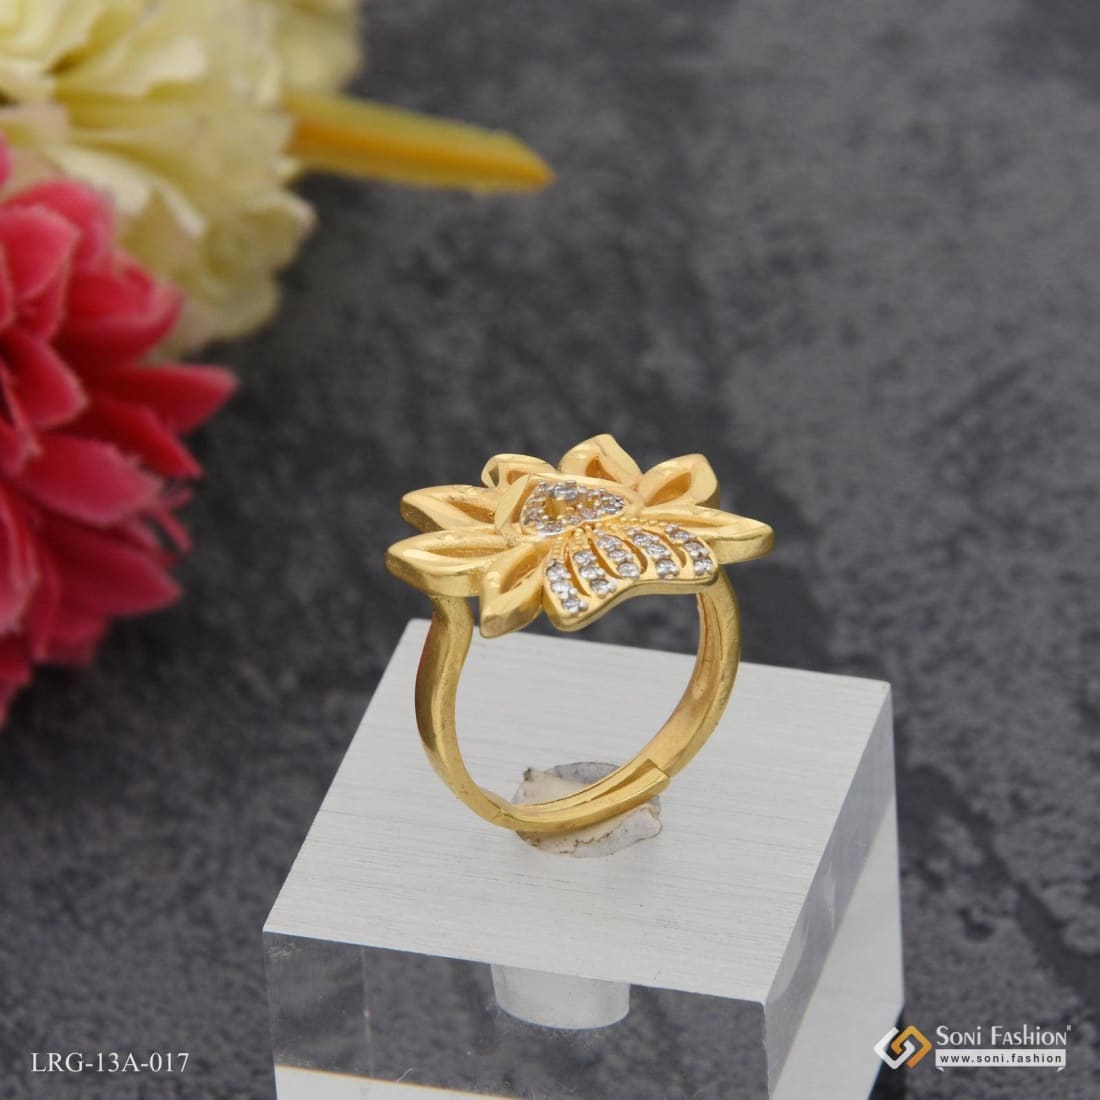 Enchanting Floral Gold Ring